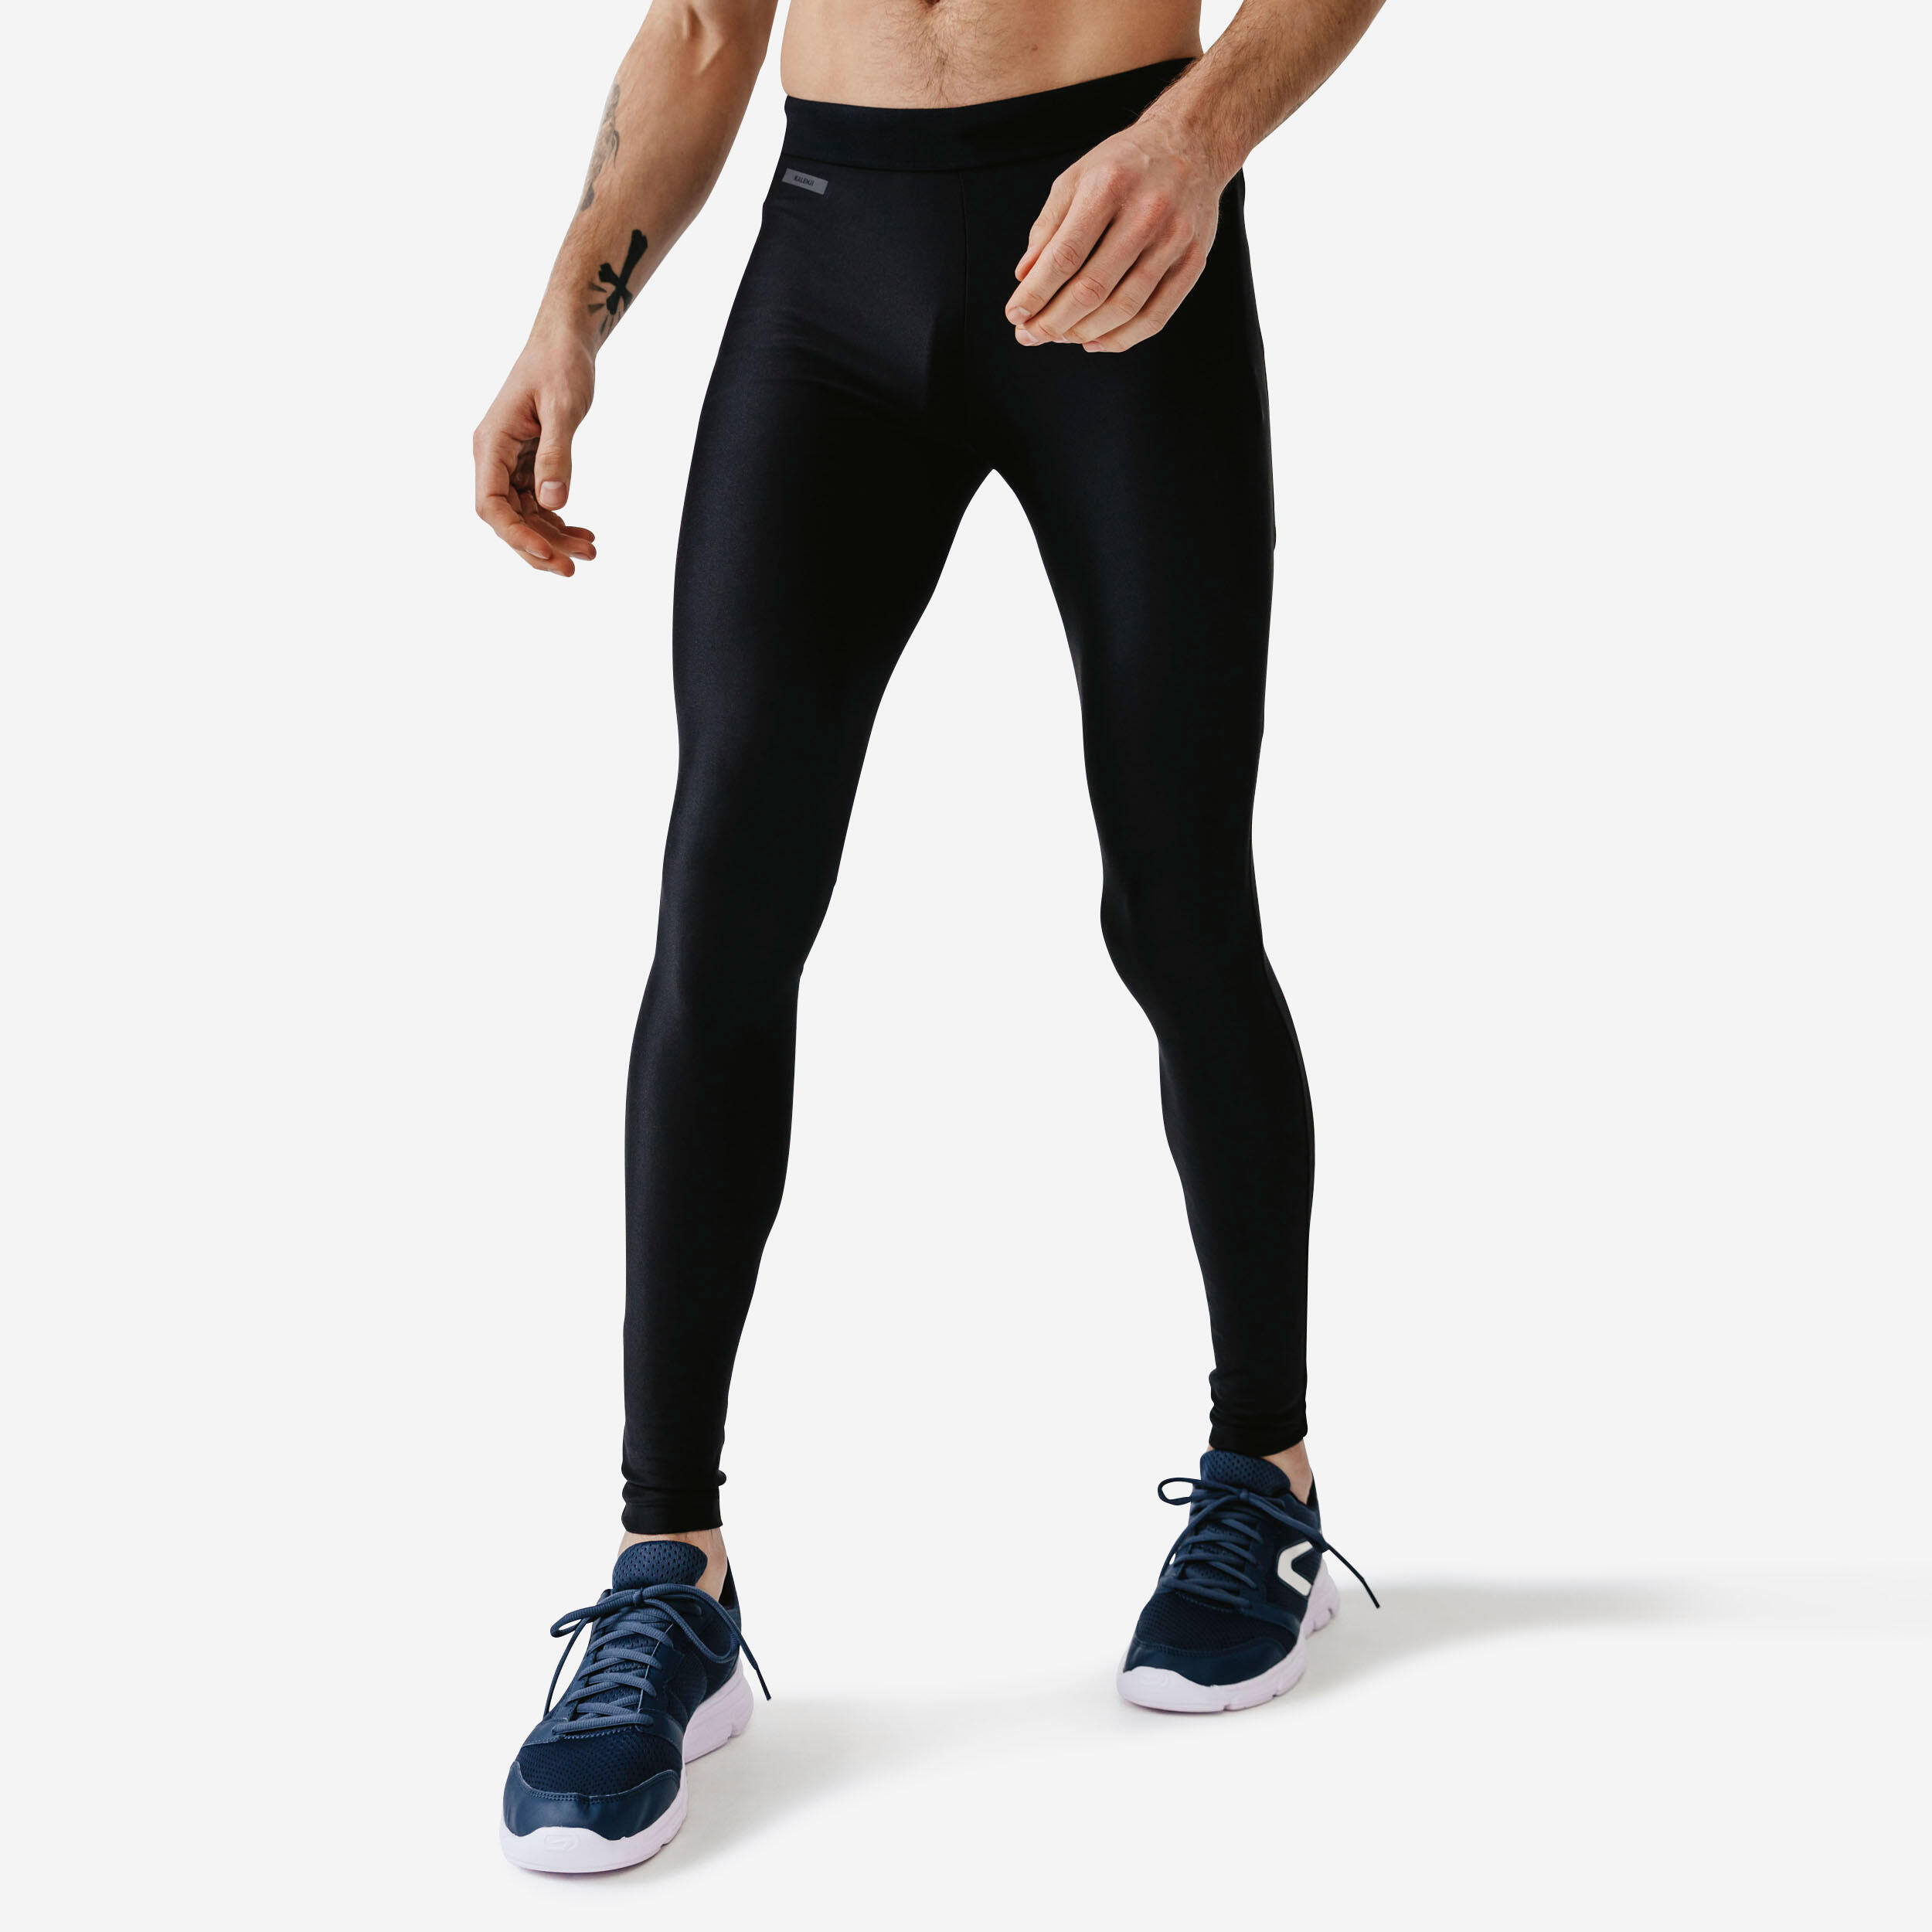 Yoga Basic Tight Sport Leggings workout leggings